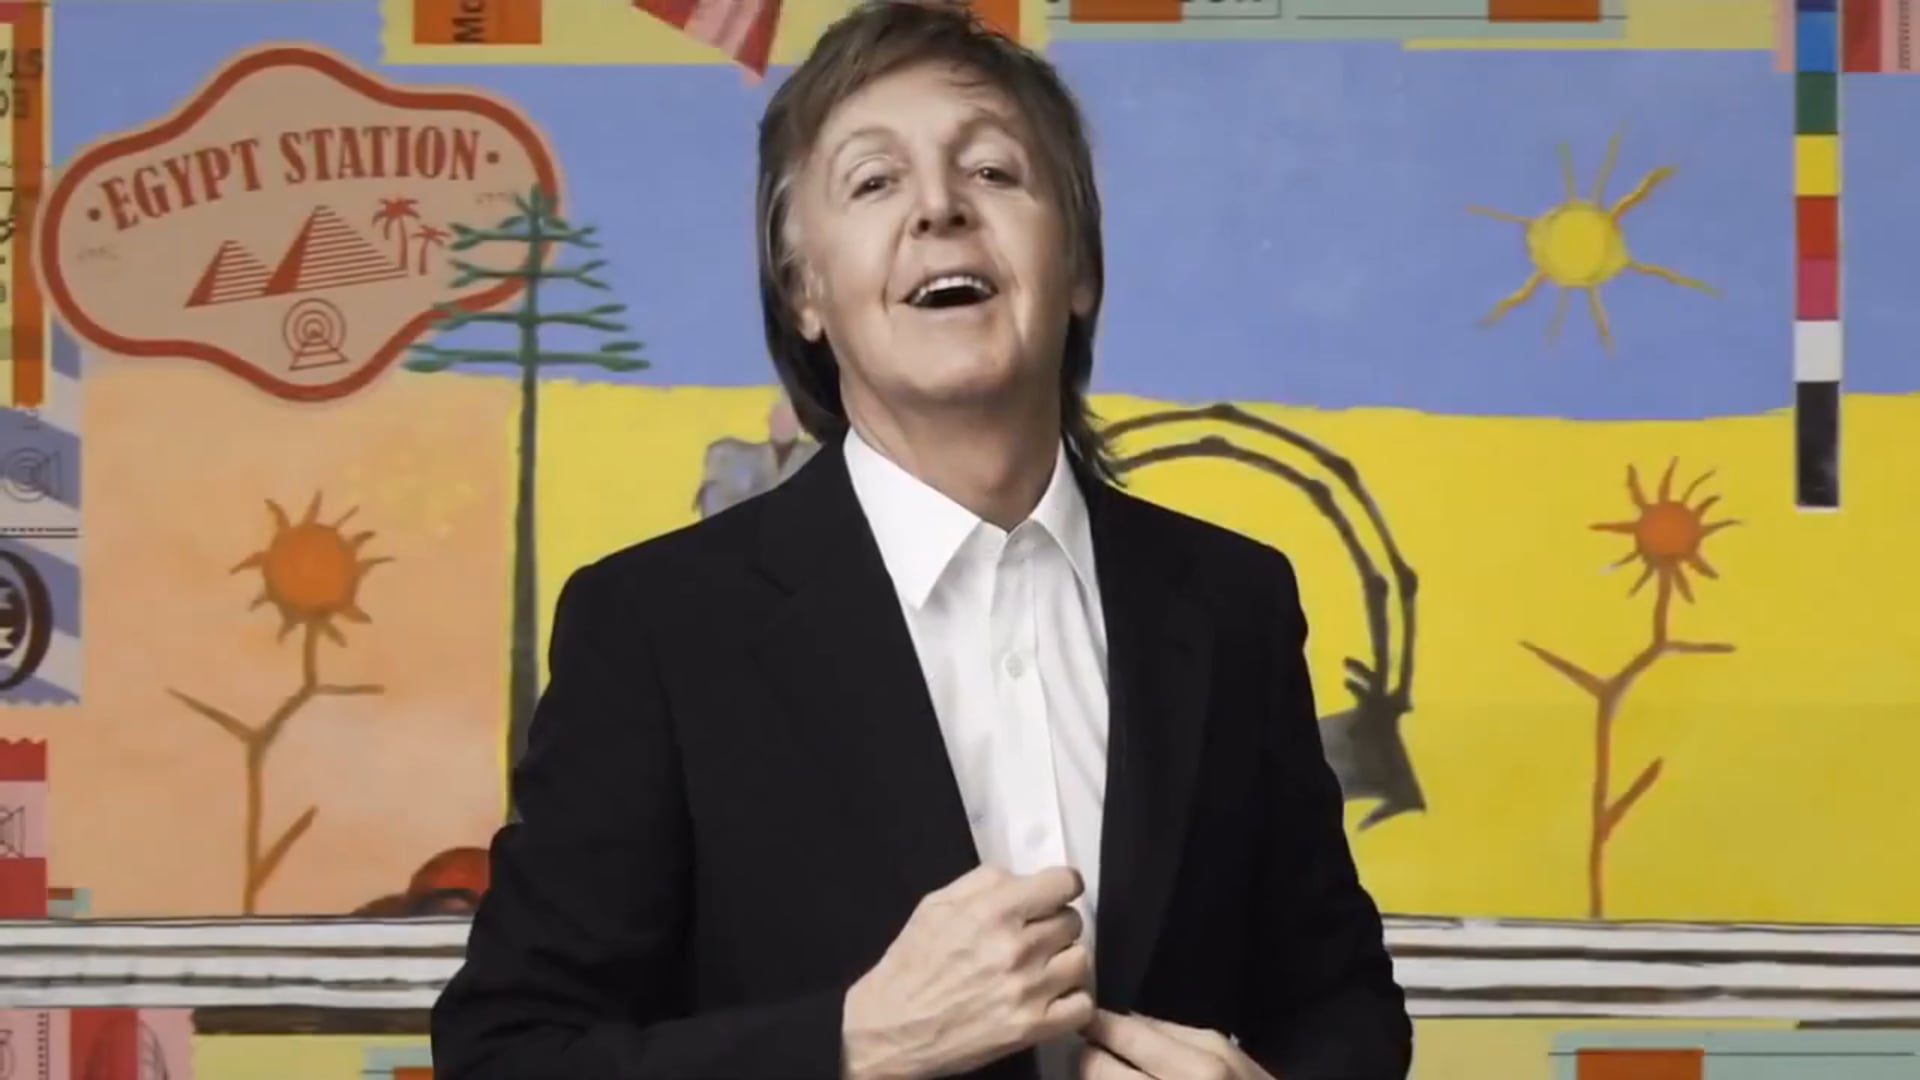 Paul McCartney : Egypt Station